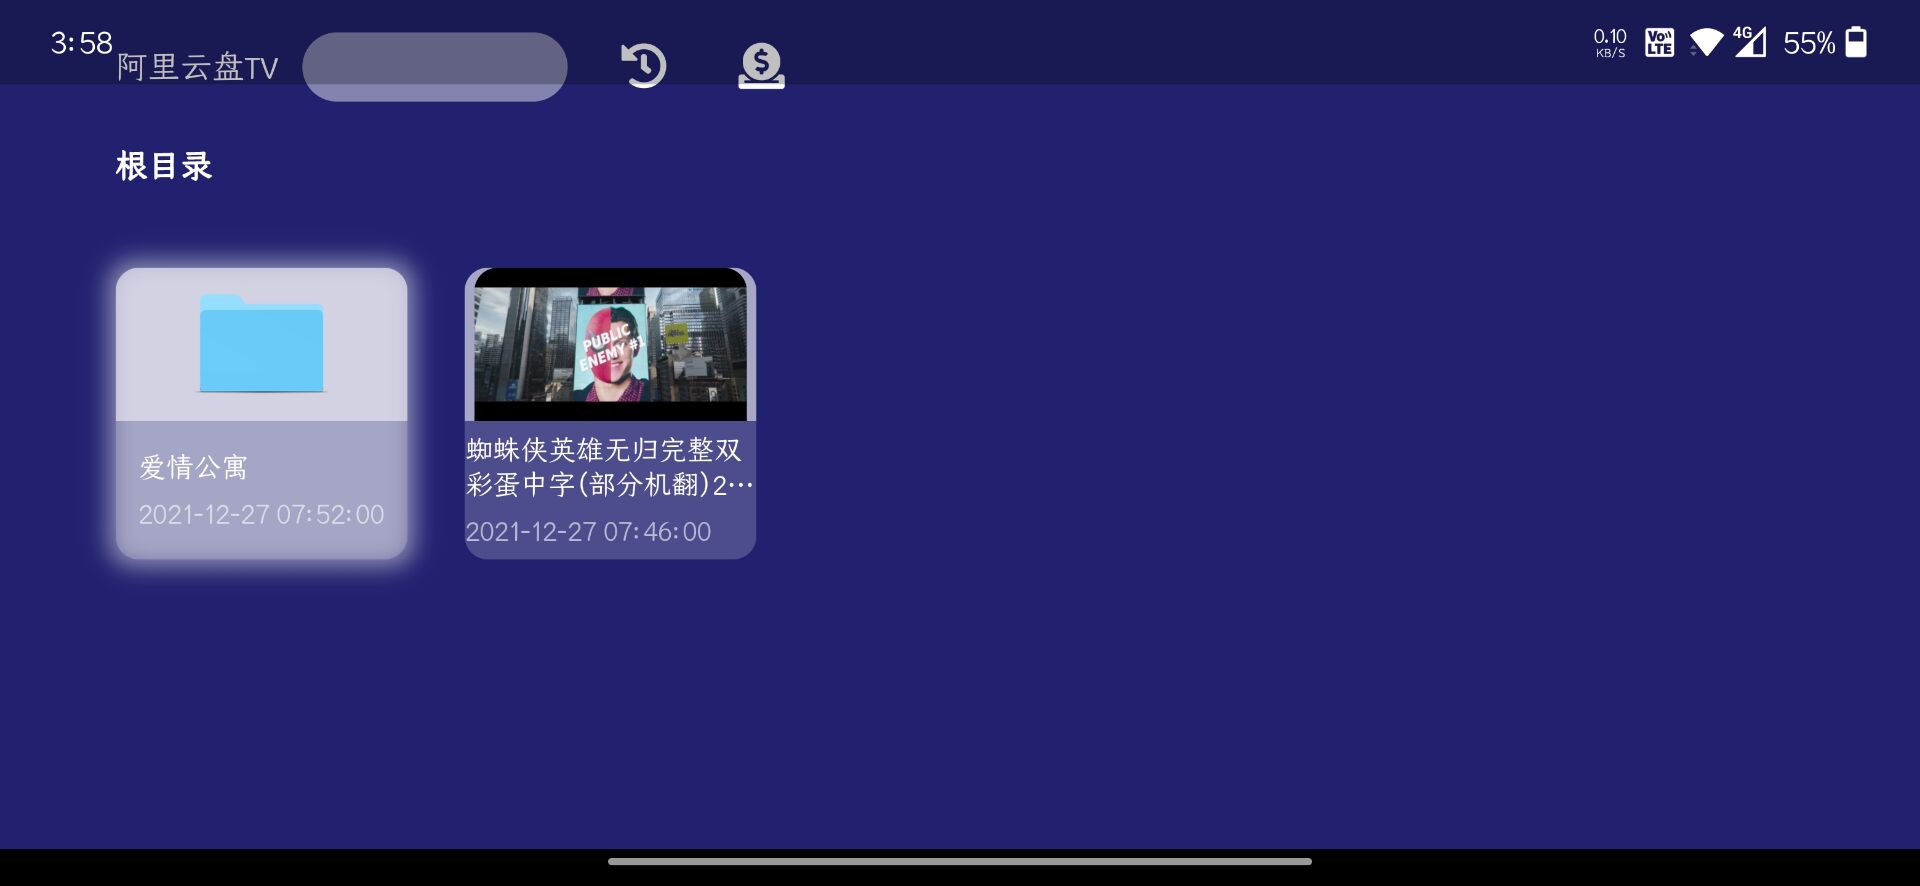 阿里云盘TV版v1.0.7纯净版支持外挂字幕 第2张插图